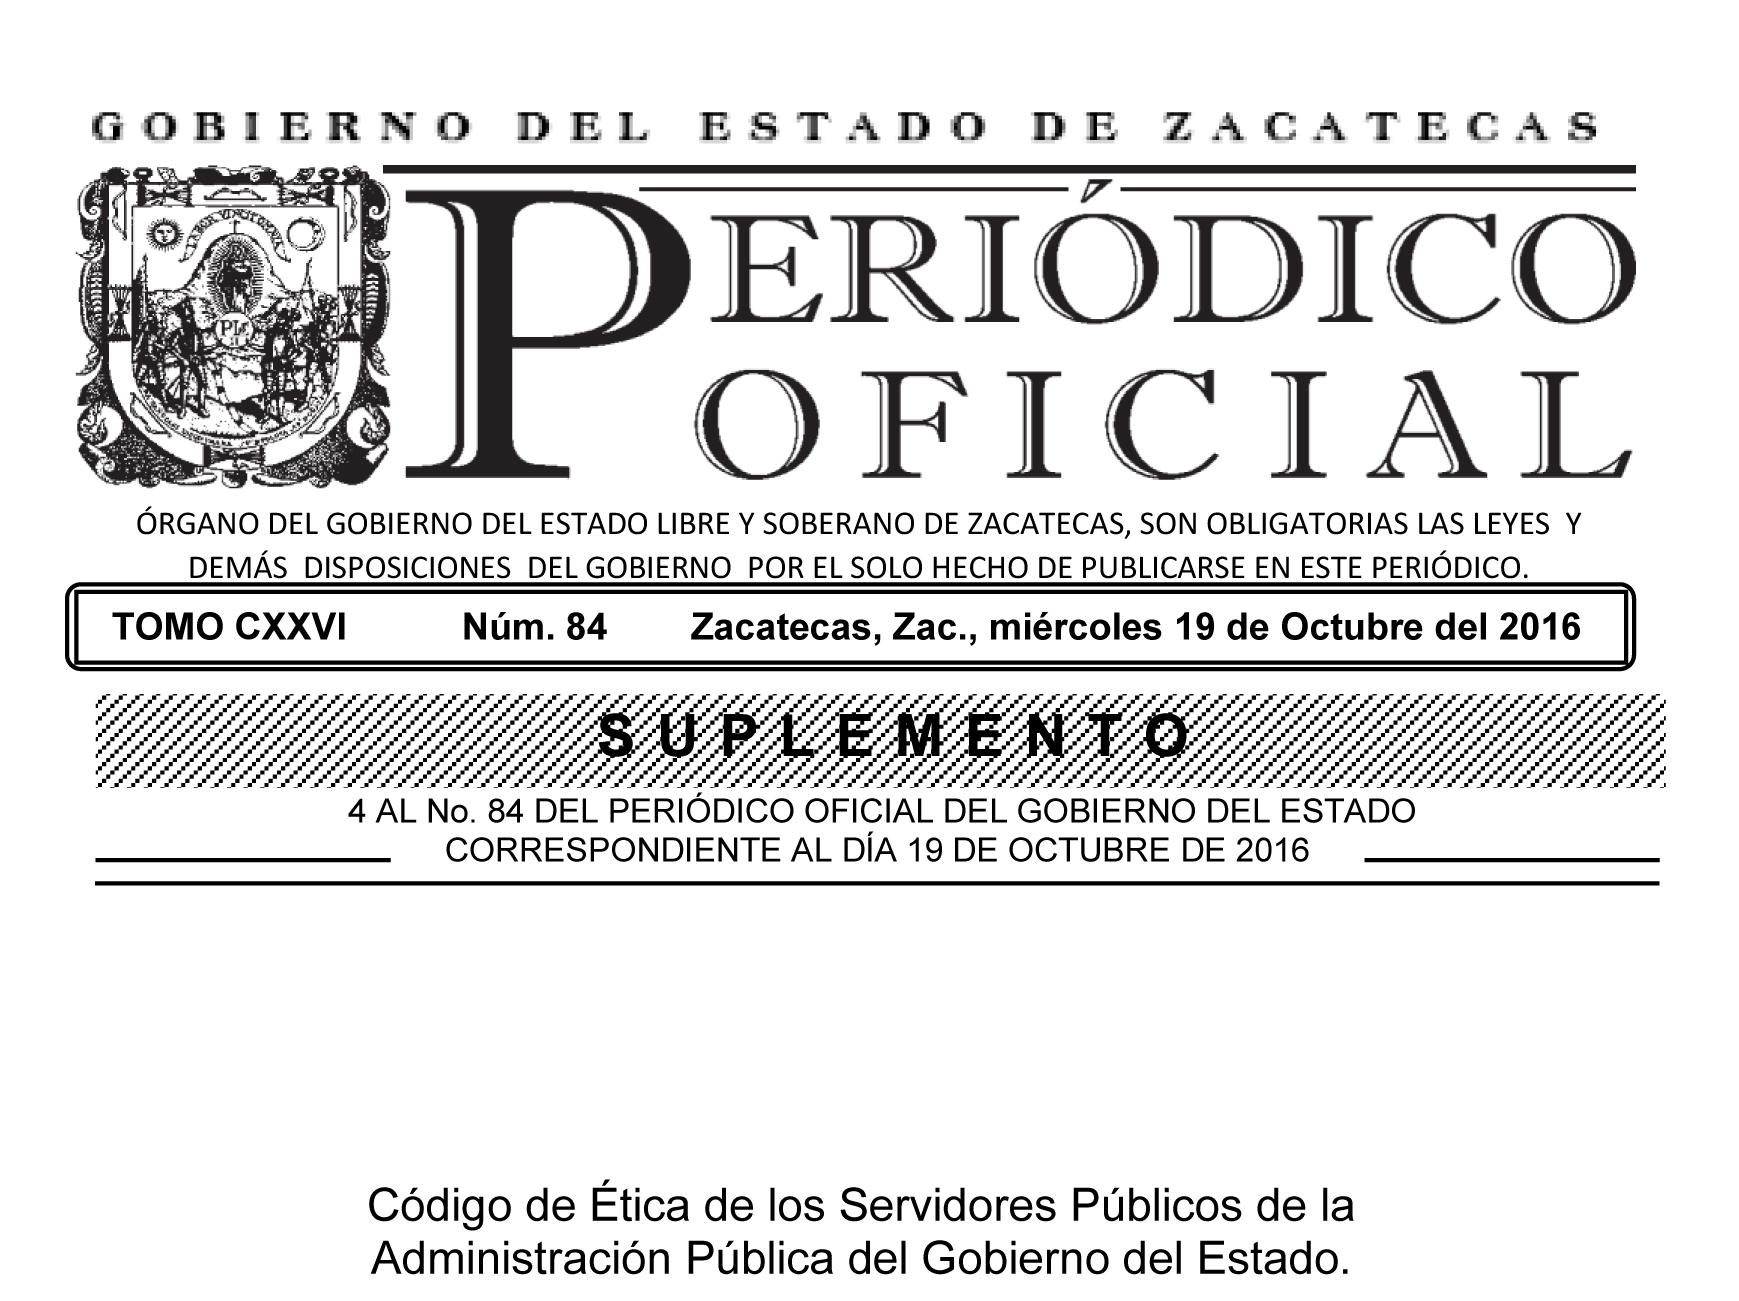 Codigo de Ética de los Servidores  Públicos Administración Pública del Gobierno del Estado.